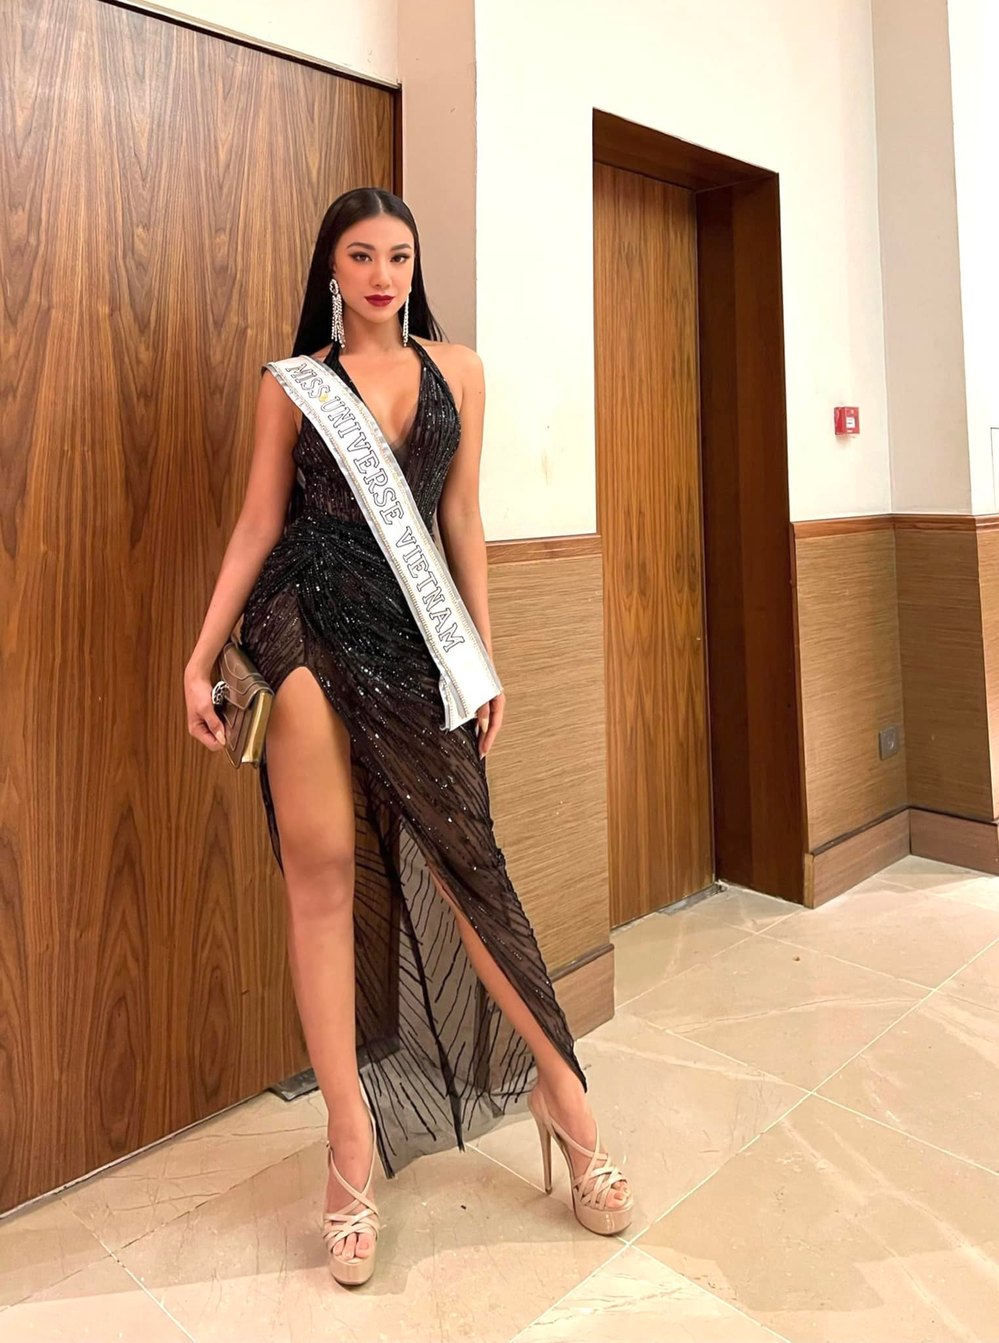  
Kim Duyên "sắc bén" trong mỗi layout xuất hiện tại Miss Universe 2021. (Ảnh: FBNV) - Tin sao Viet - Tin tuc sao Viet - Scandal sao Viet - Tin tuc cua Sao - Tin cua Sao